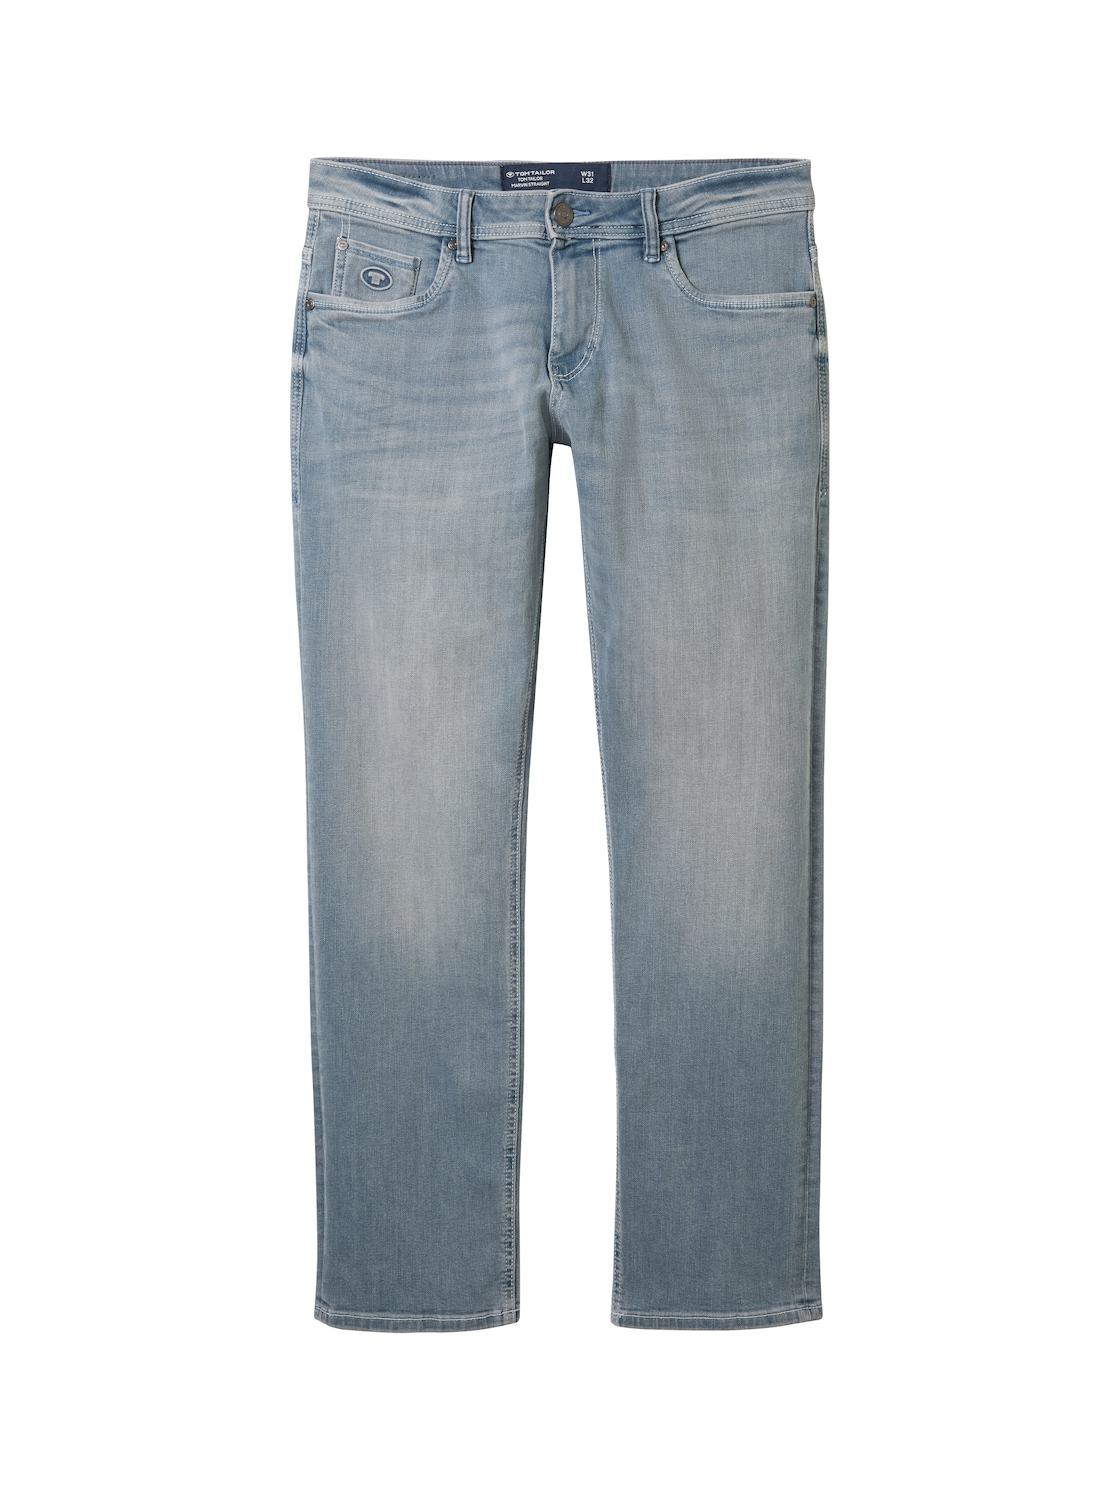 TOM TAILOR Herren Marvin Straight Jeans mit recycelter Baumwolle, blau, Uni, Gr. 32/36 von Tom Tailor